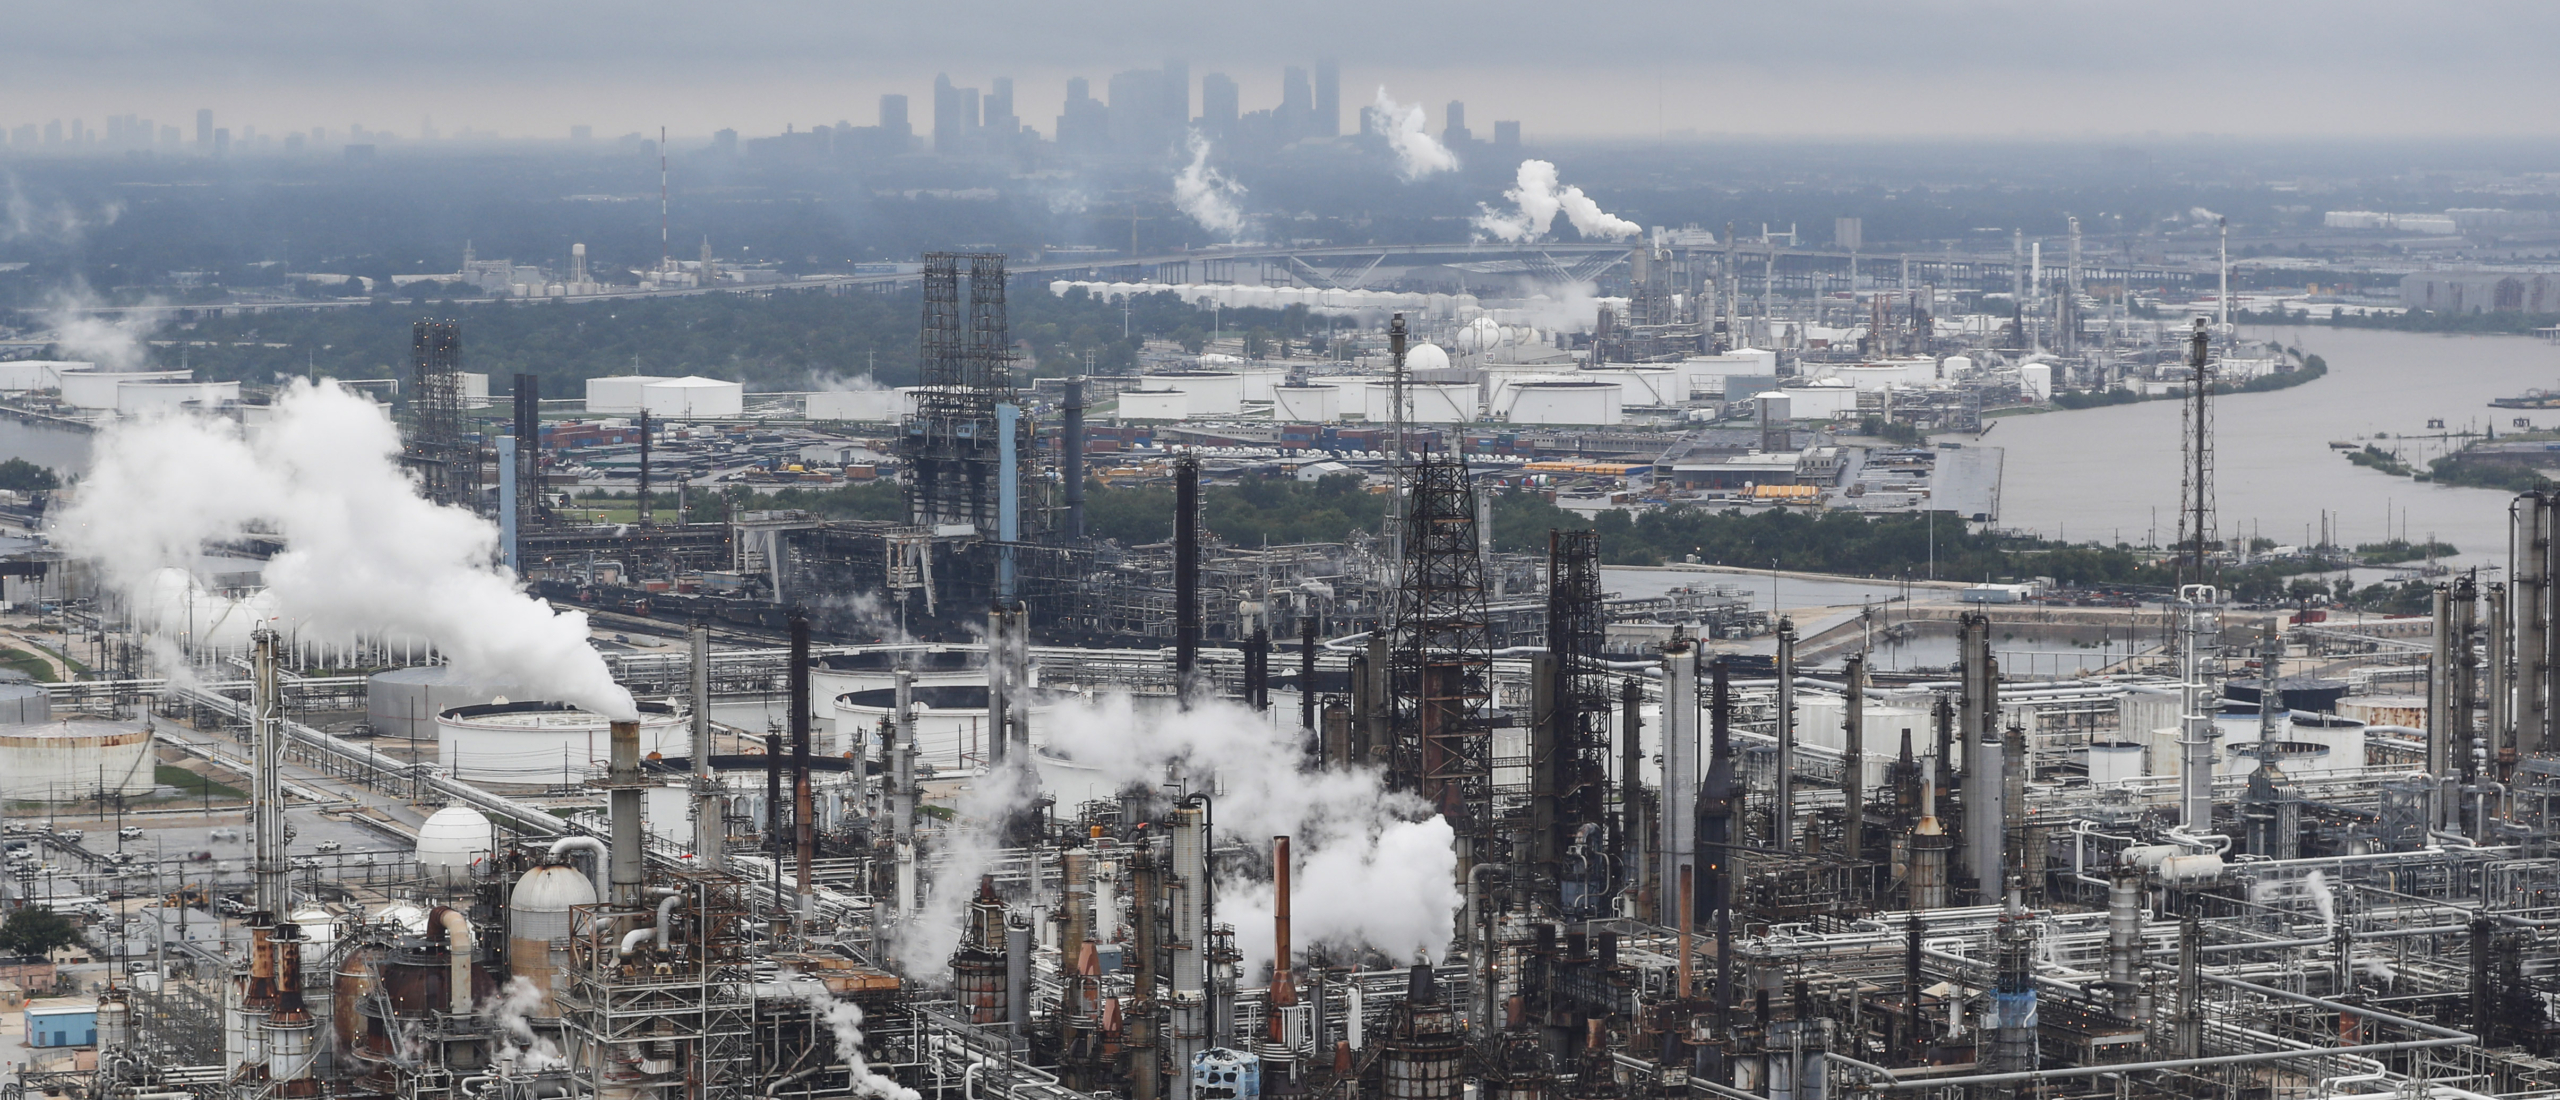 Estados Unidos: Vidas destrozadas y derechos humanos sacrificados por la contaminación vinculada a los combustibles fósiles que emiten las plantas petroquímicas de Texas y Luisiana - Amnistía Internacional